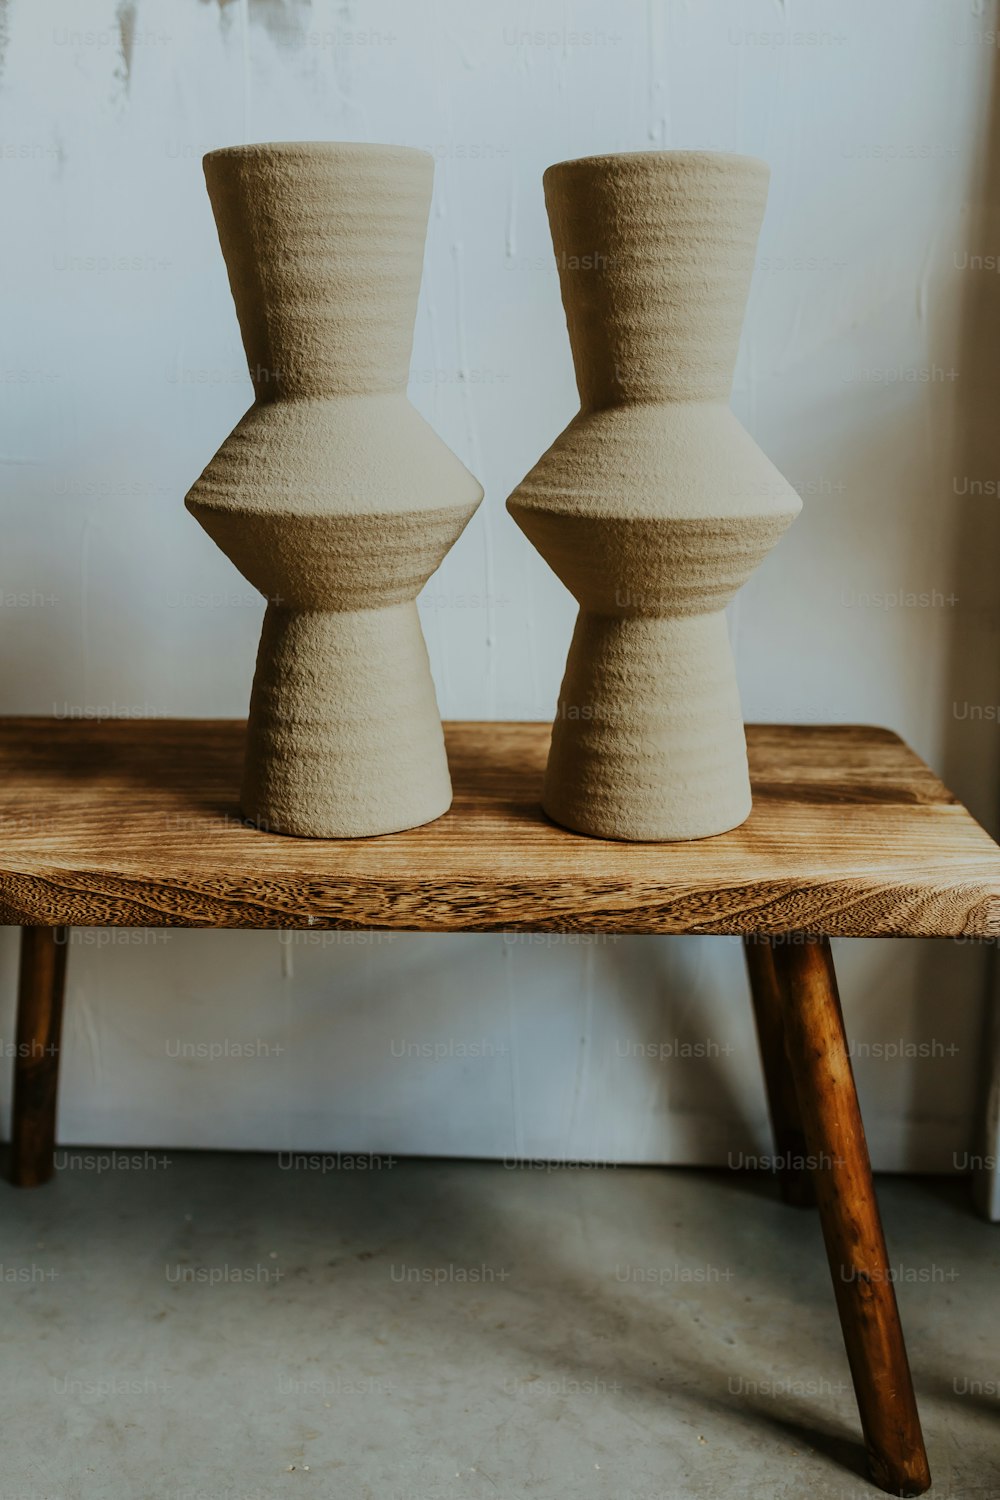 deux vases assis sur une table en bois